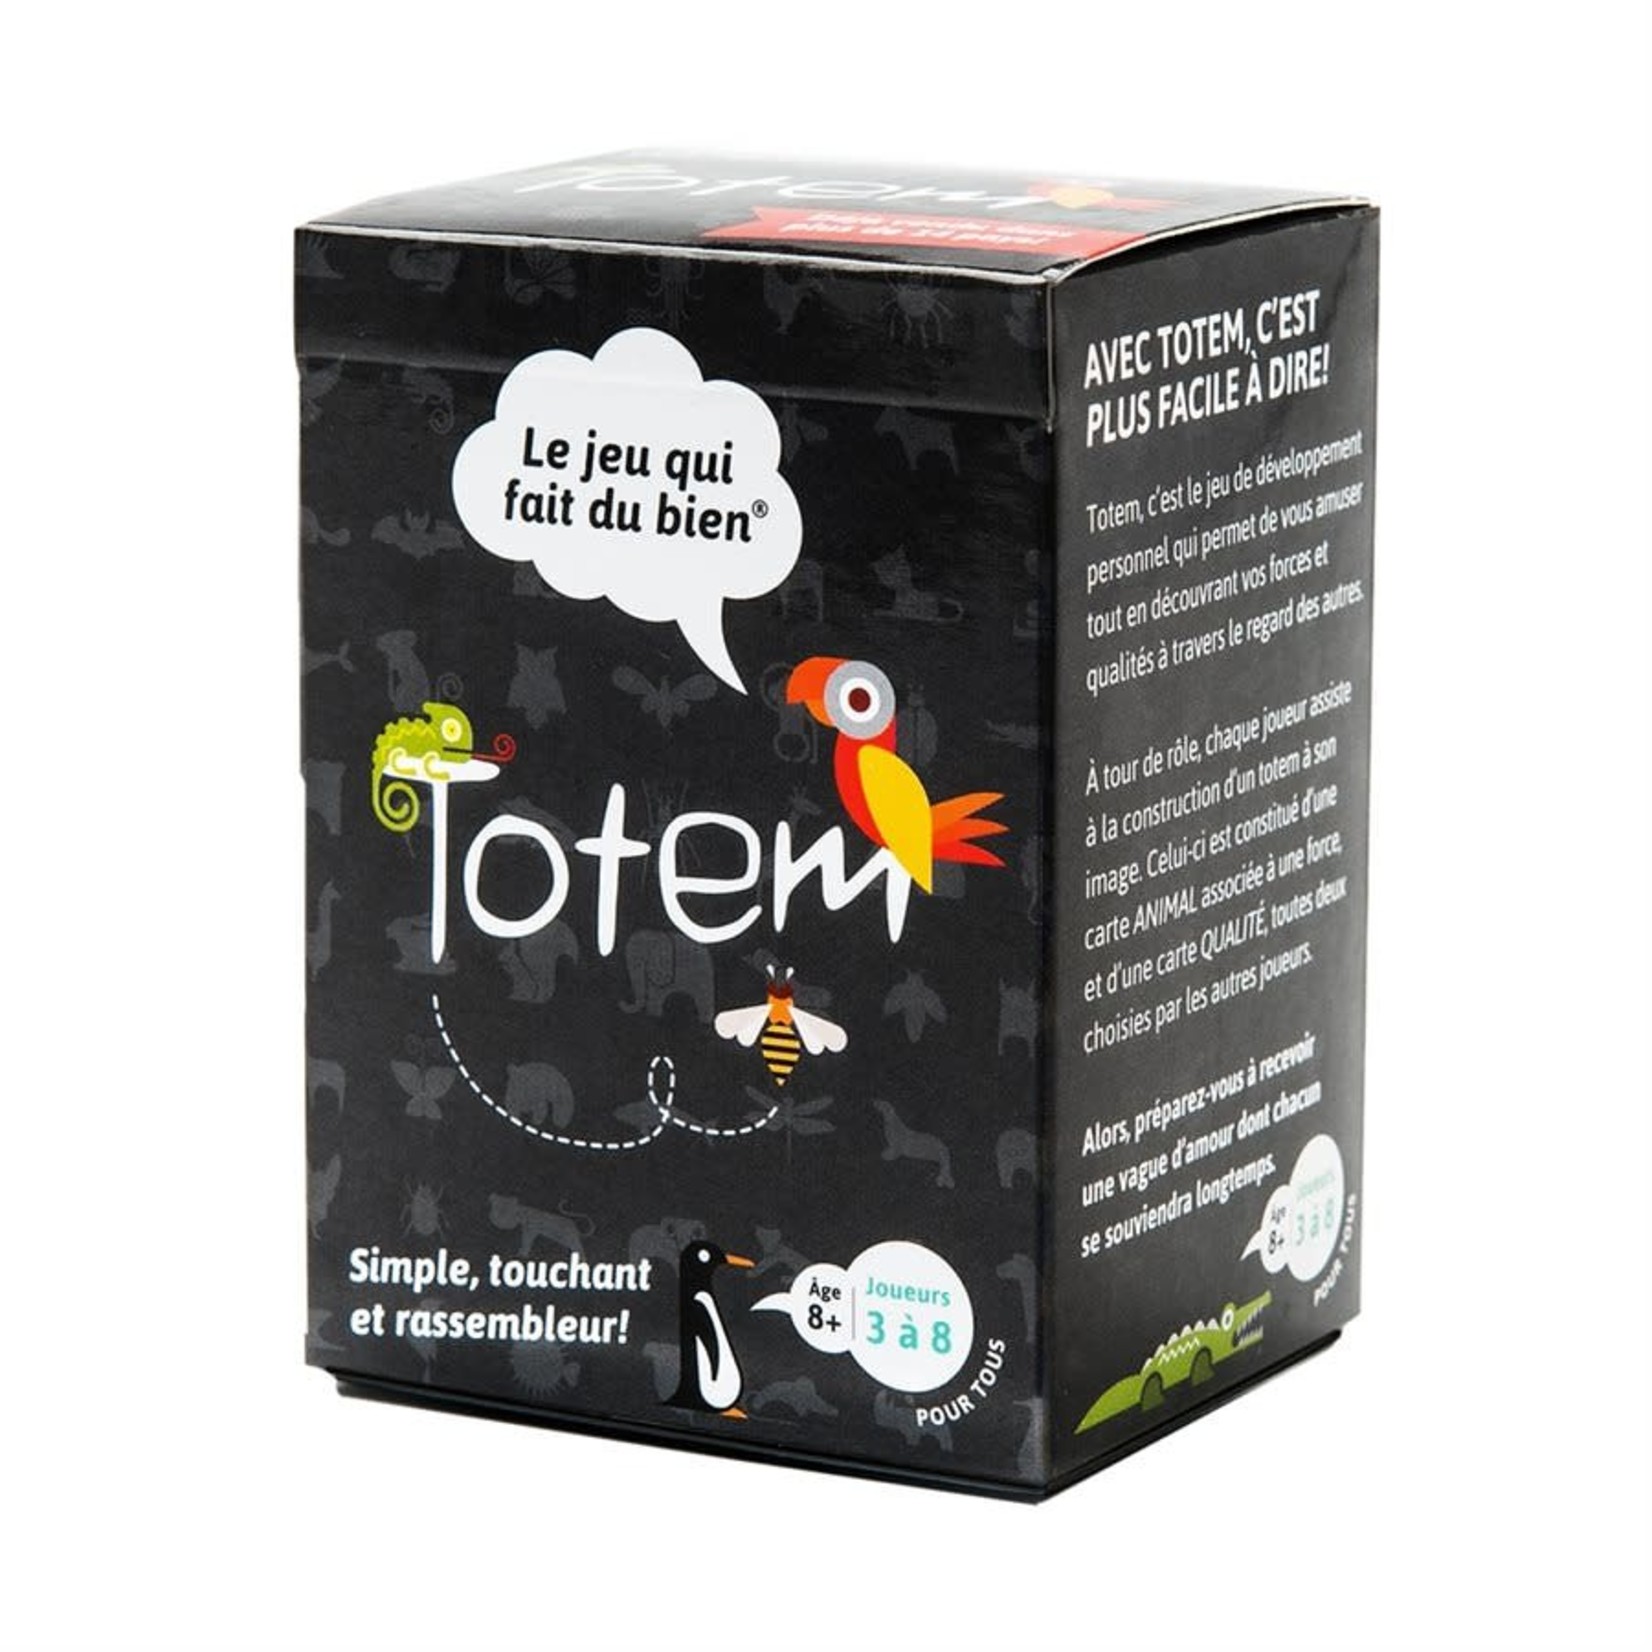 Totem Totem - Le jeu qui fait du bien!